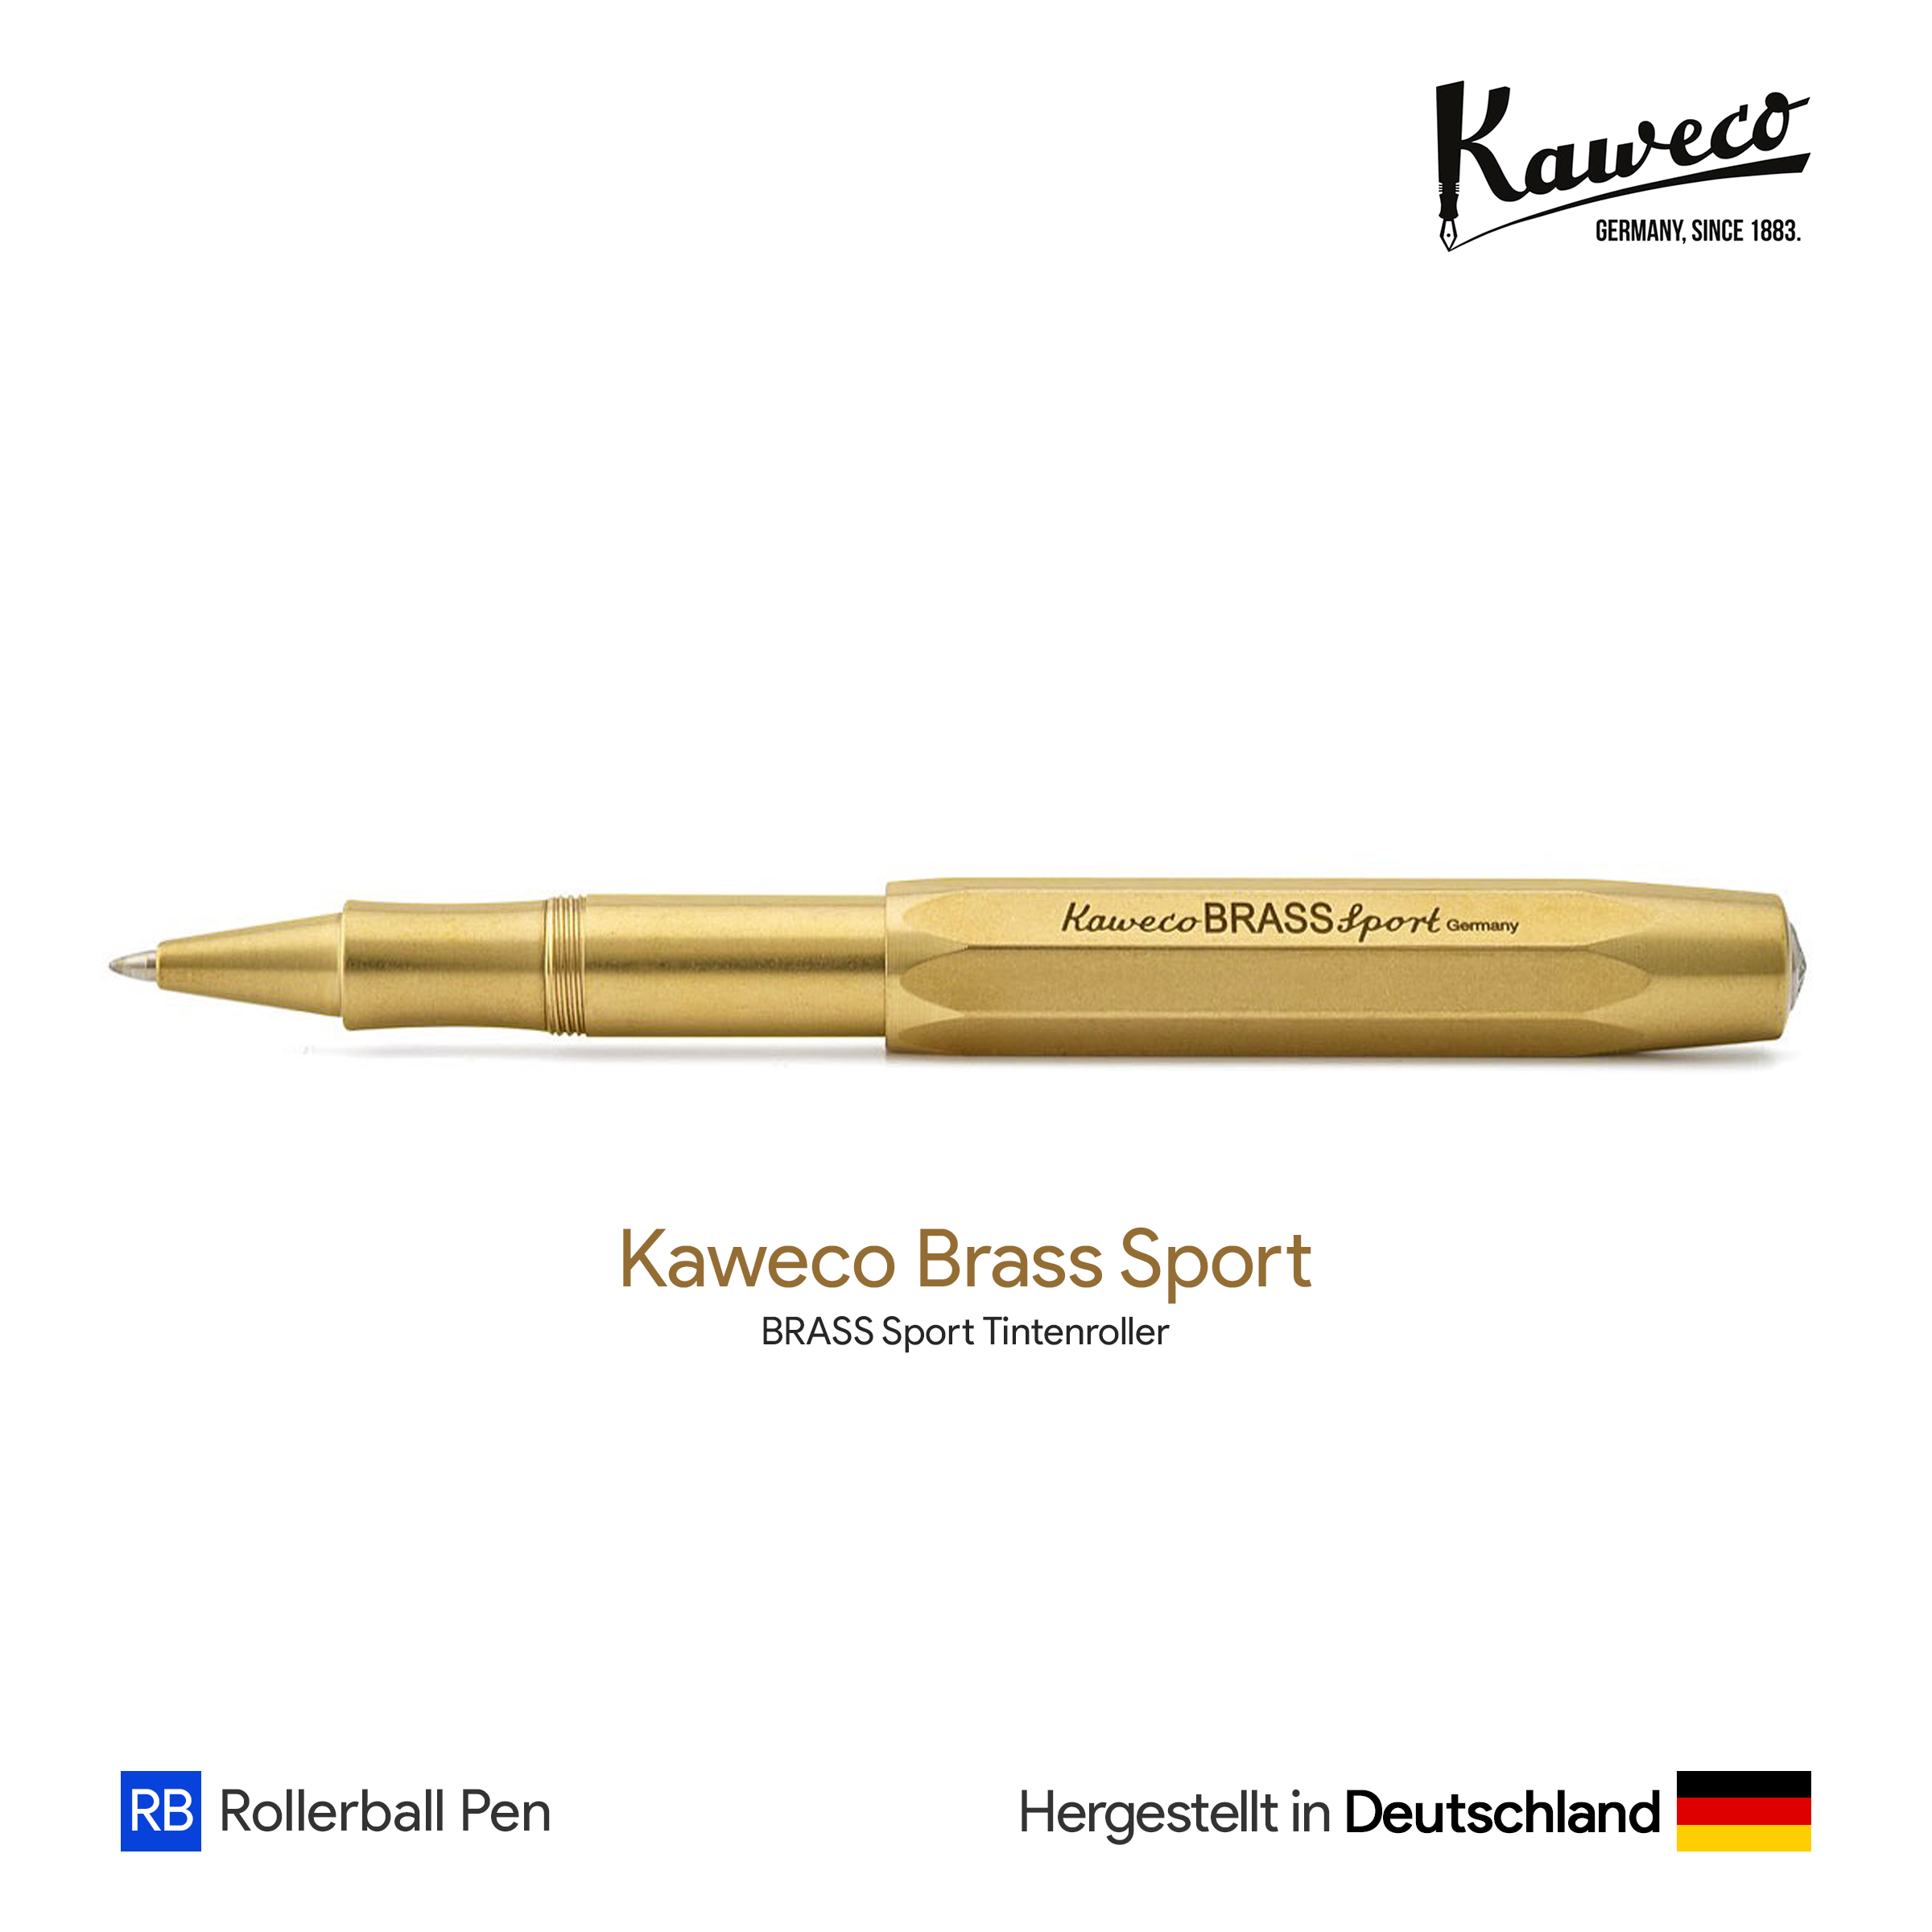 Kaweco Brass Sport Rollerball Pen - ปากกาโรลเลอร์บอลล์คาเวโก้สปอร์ต  รุ่นทองเหลือง